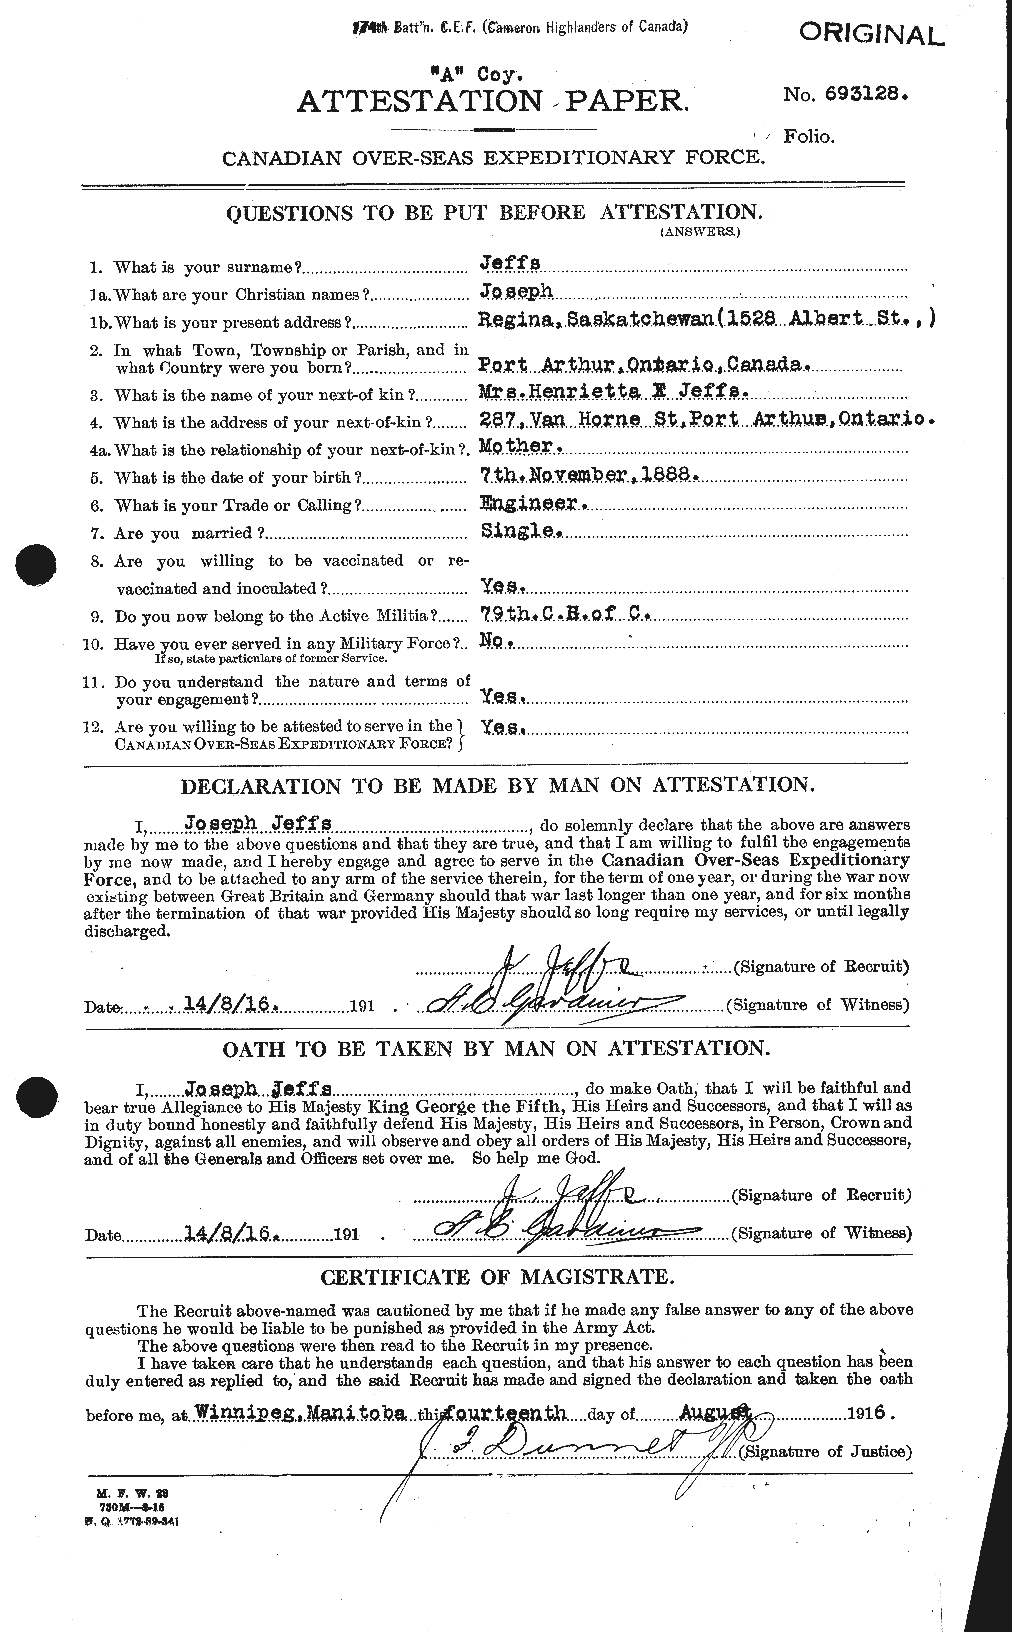 Dossiers du Personnel de la Première Guerre mondiale - CEC 418003a